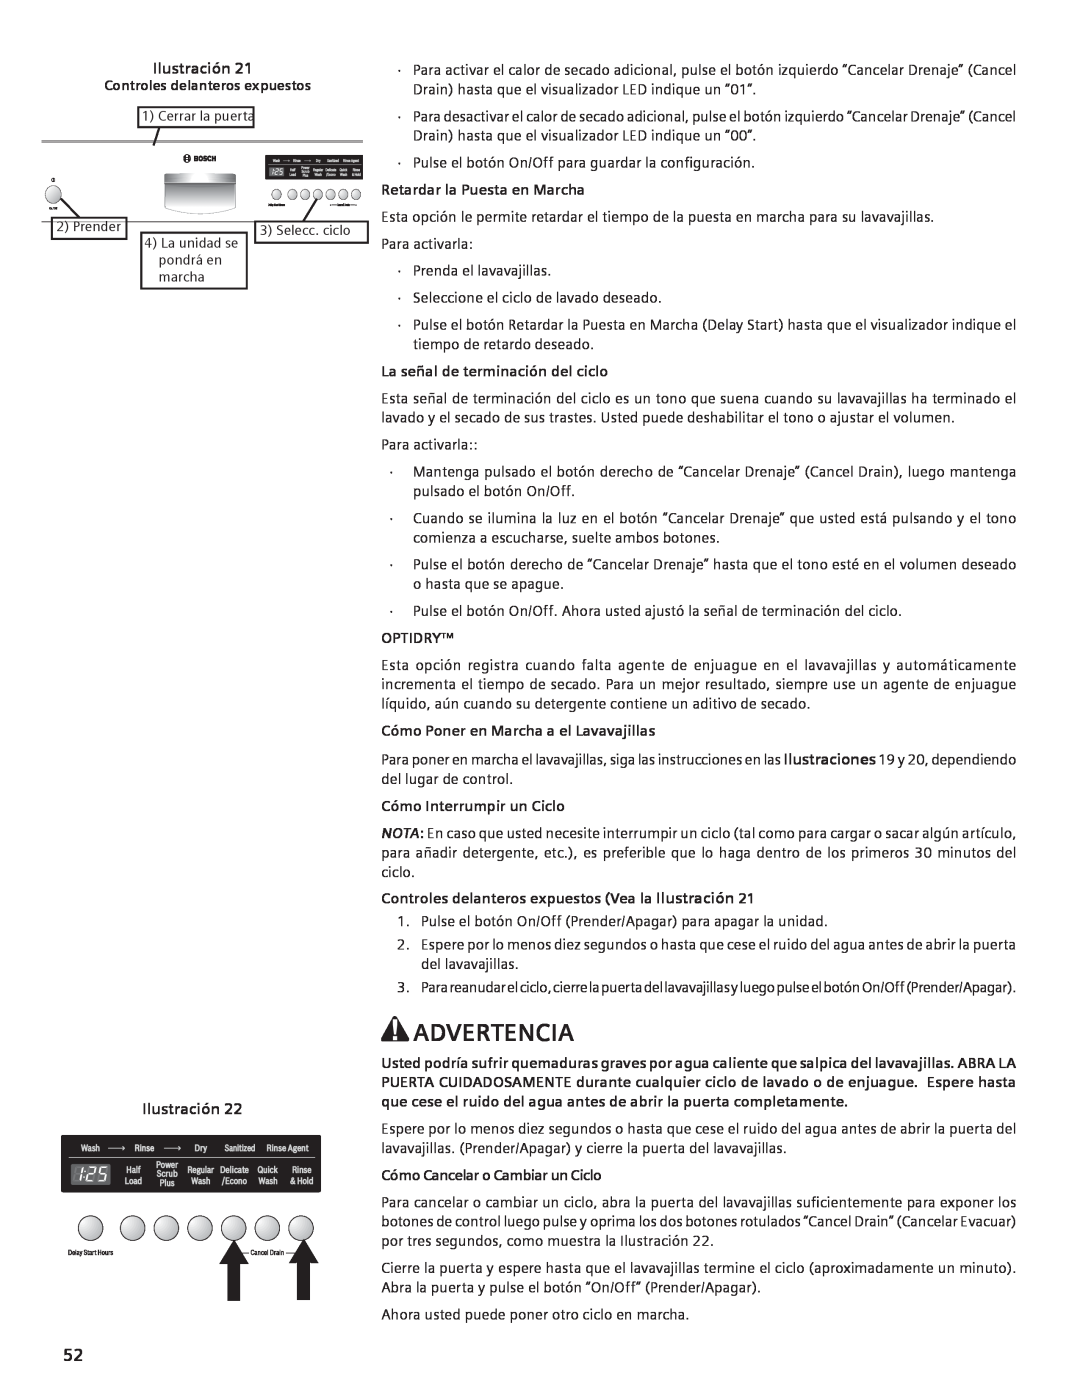 Compaq SHE55C manual Advertencia, Ilustración, Controles delanteros expuestos, Retardar la Puesta en Marcha, Optidry 